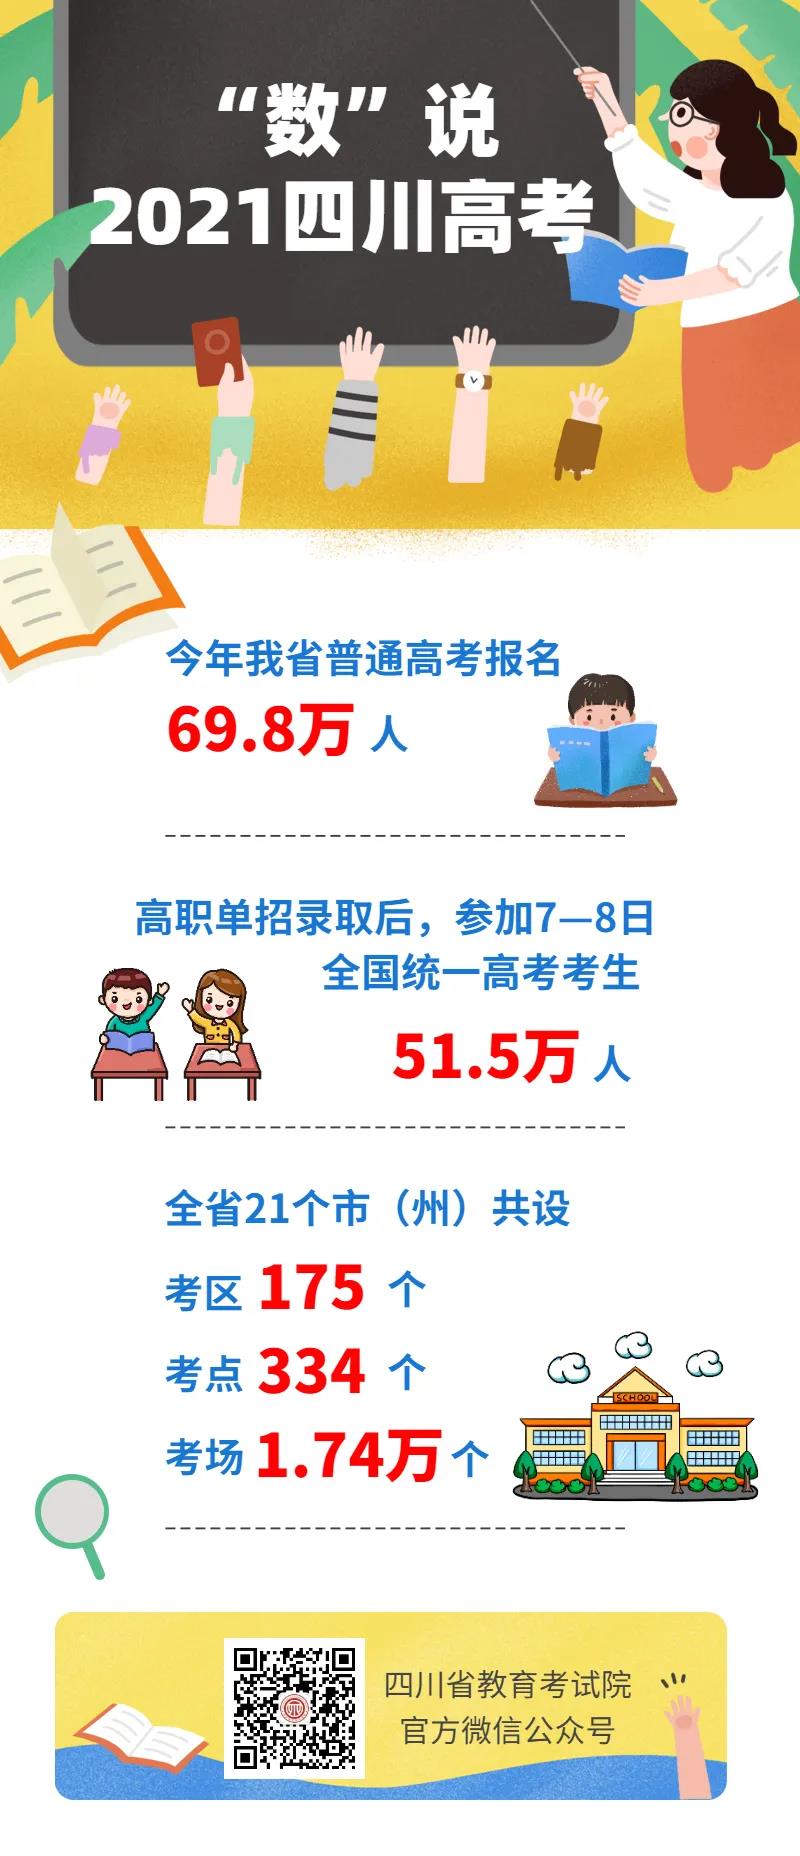 2021年四川高考报名人数69.8万人 考区175个 考点334个 考场1.74万个